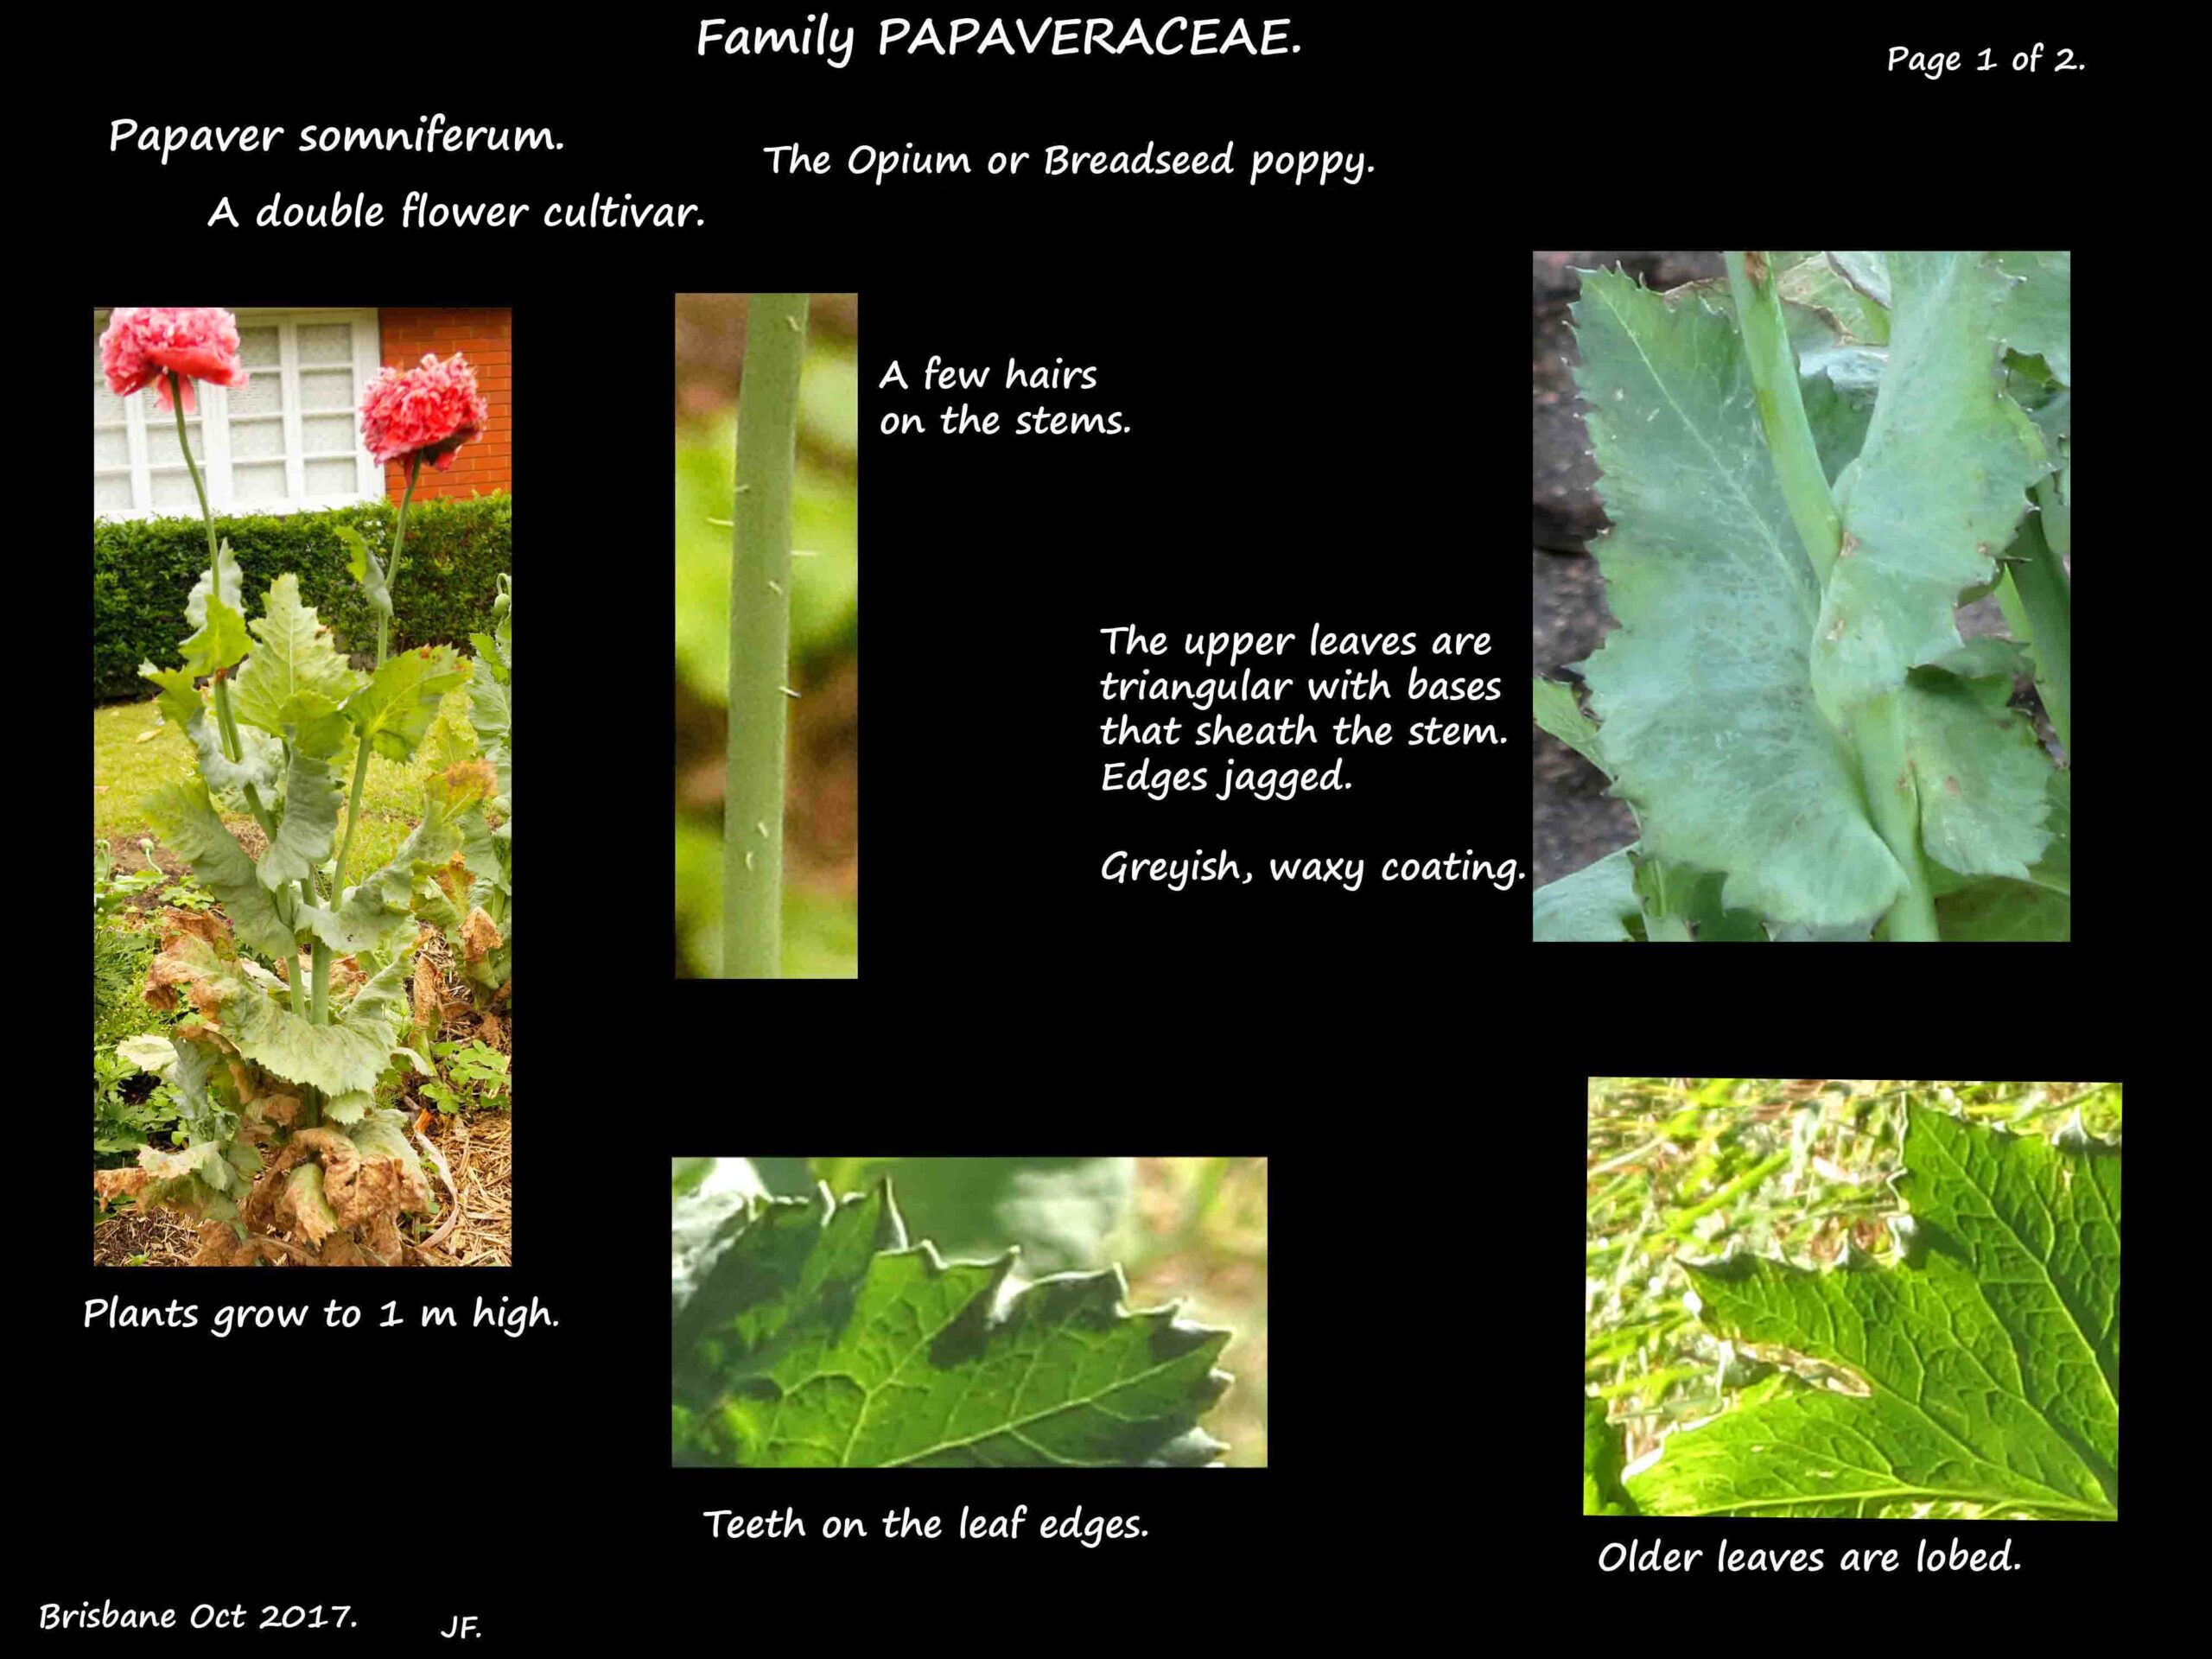 1 Opium poppy plant & leaves